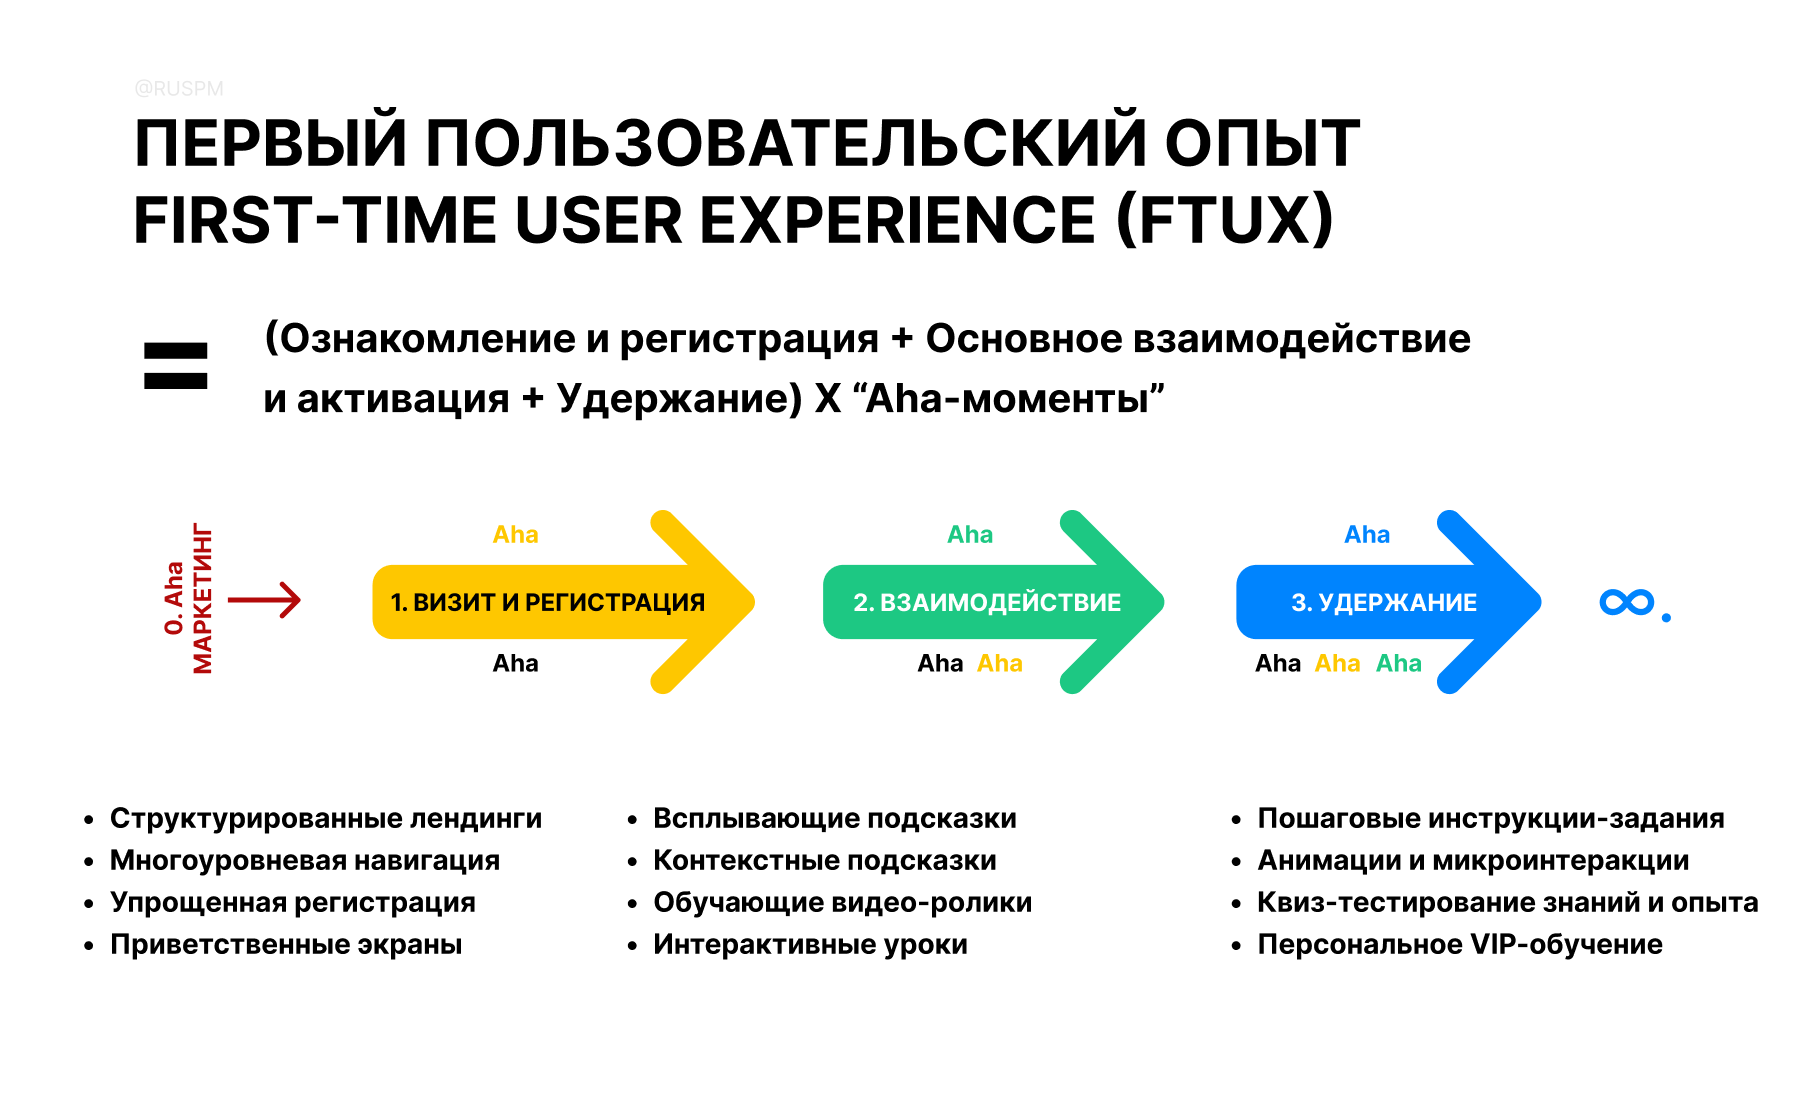 Первый пользовательский опыт или First-Time User Experience (FTUX)